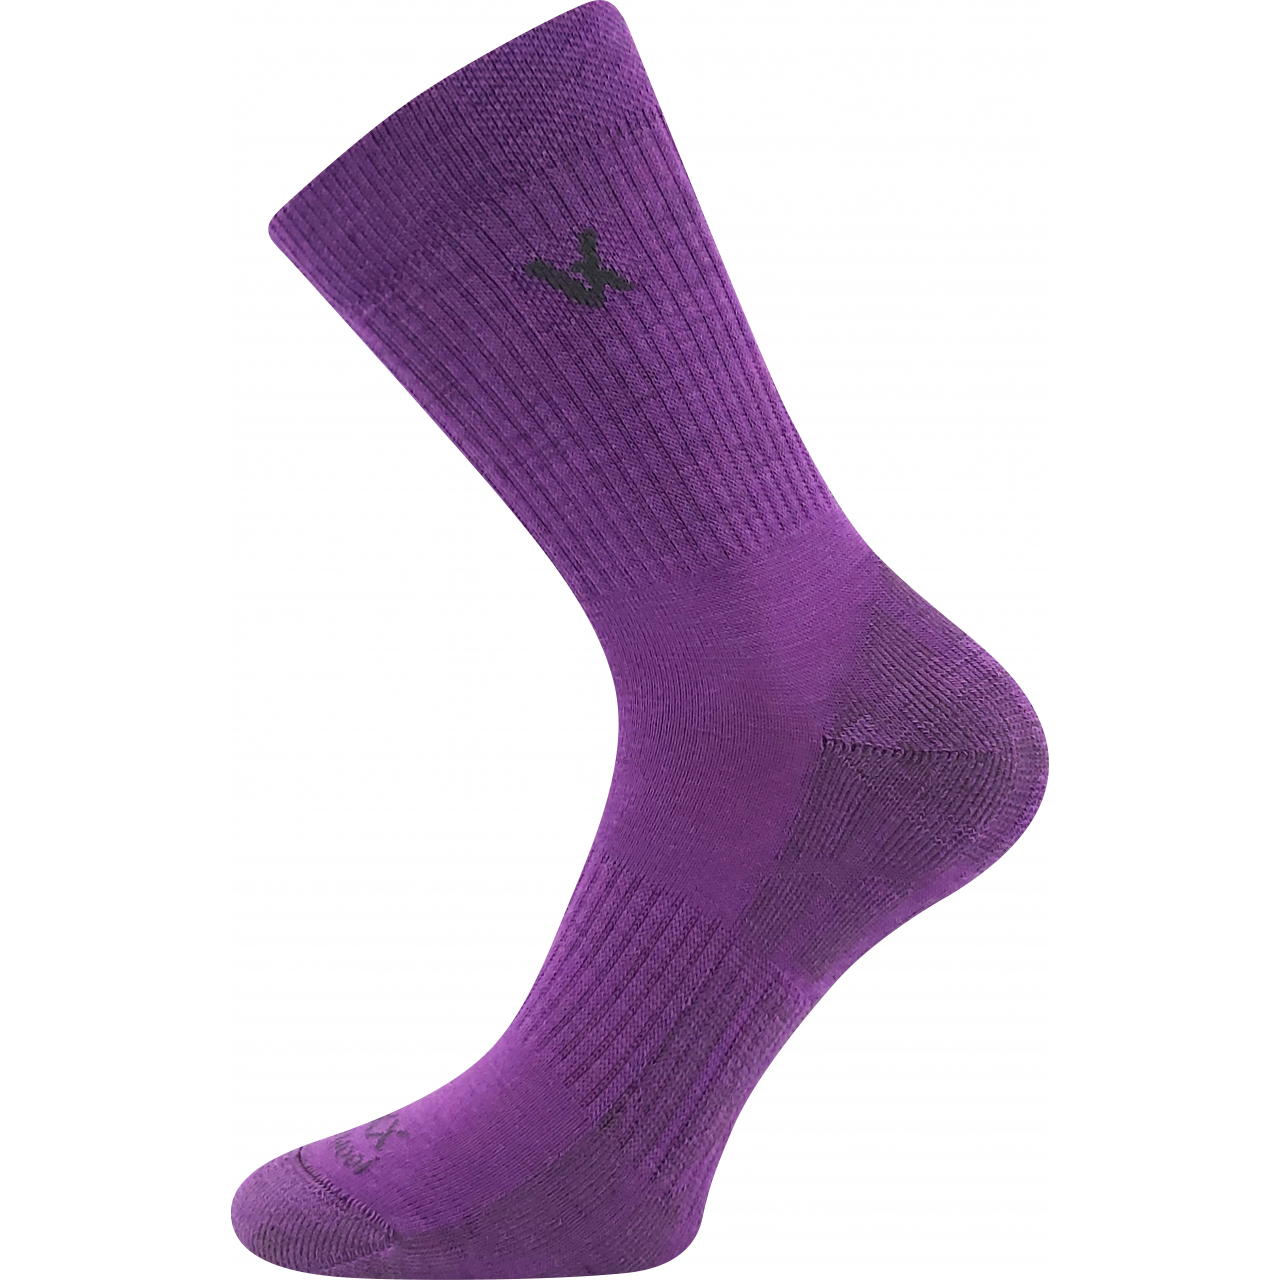 Ponožky unisex sportovní Voxx Twarix - fialové, 35-38